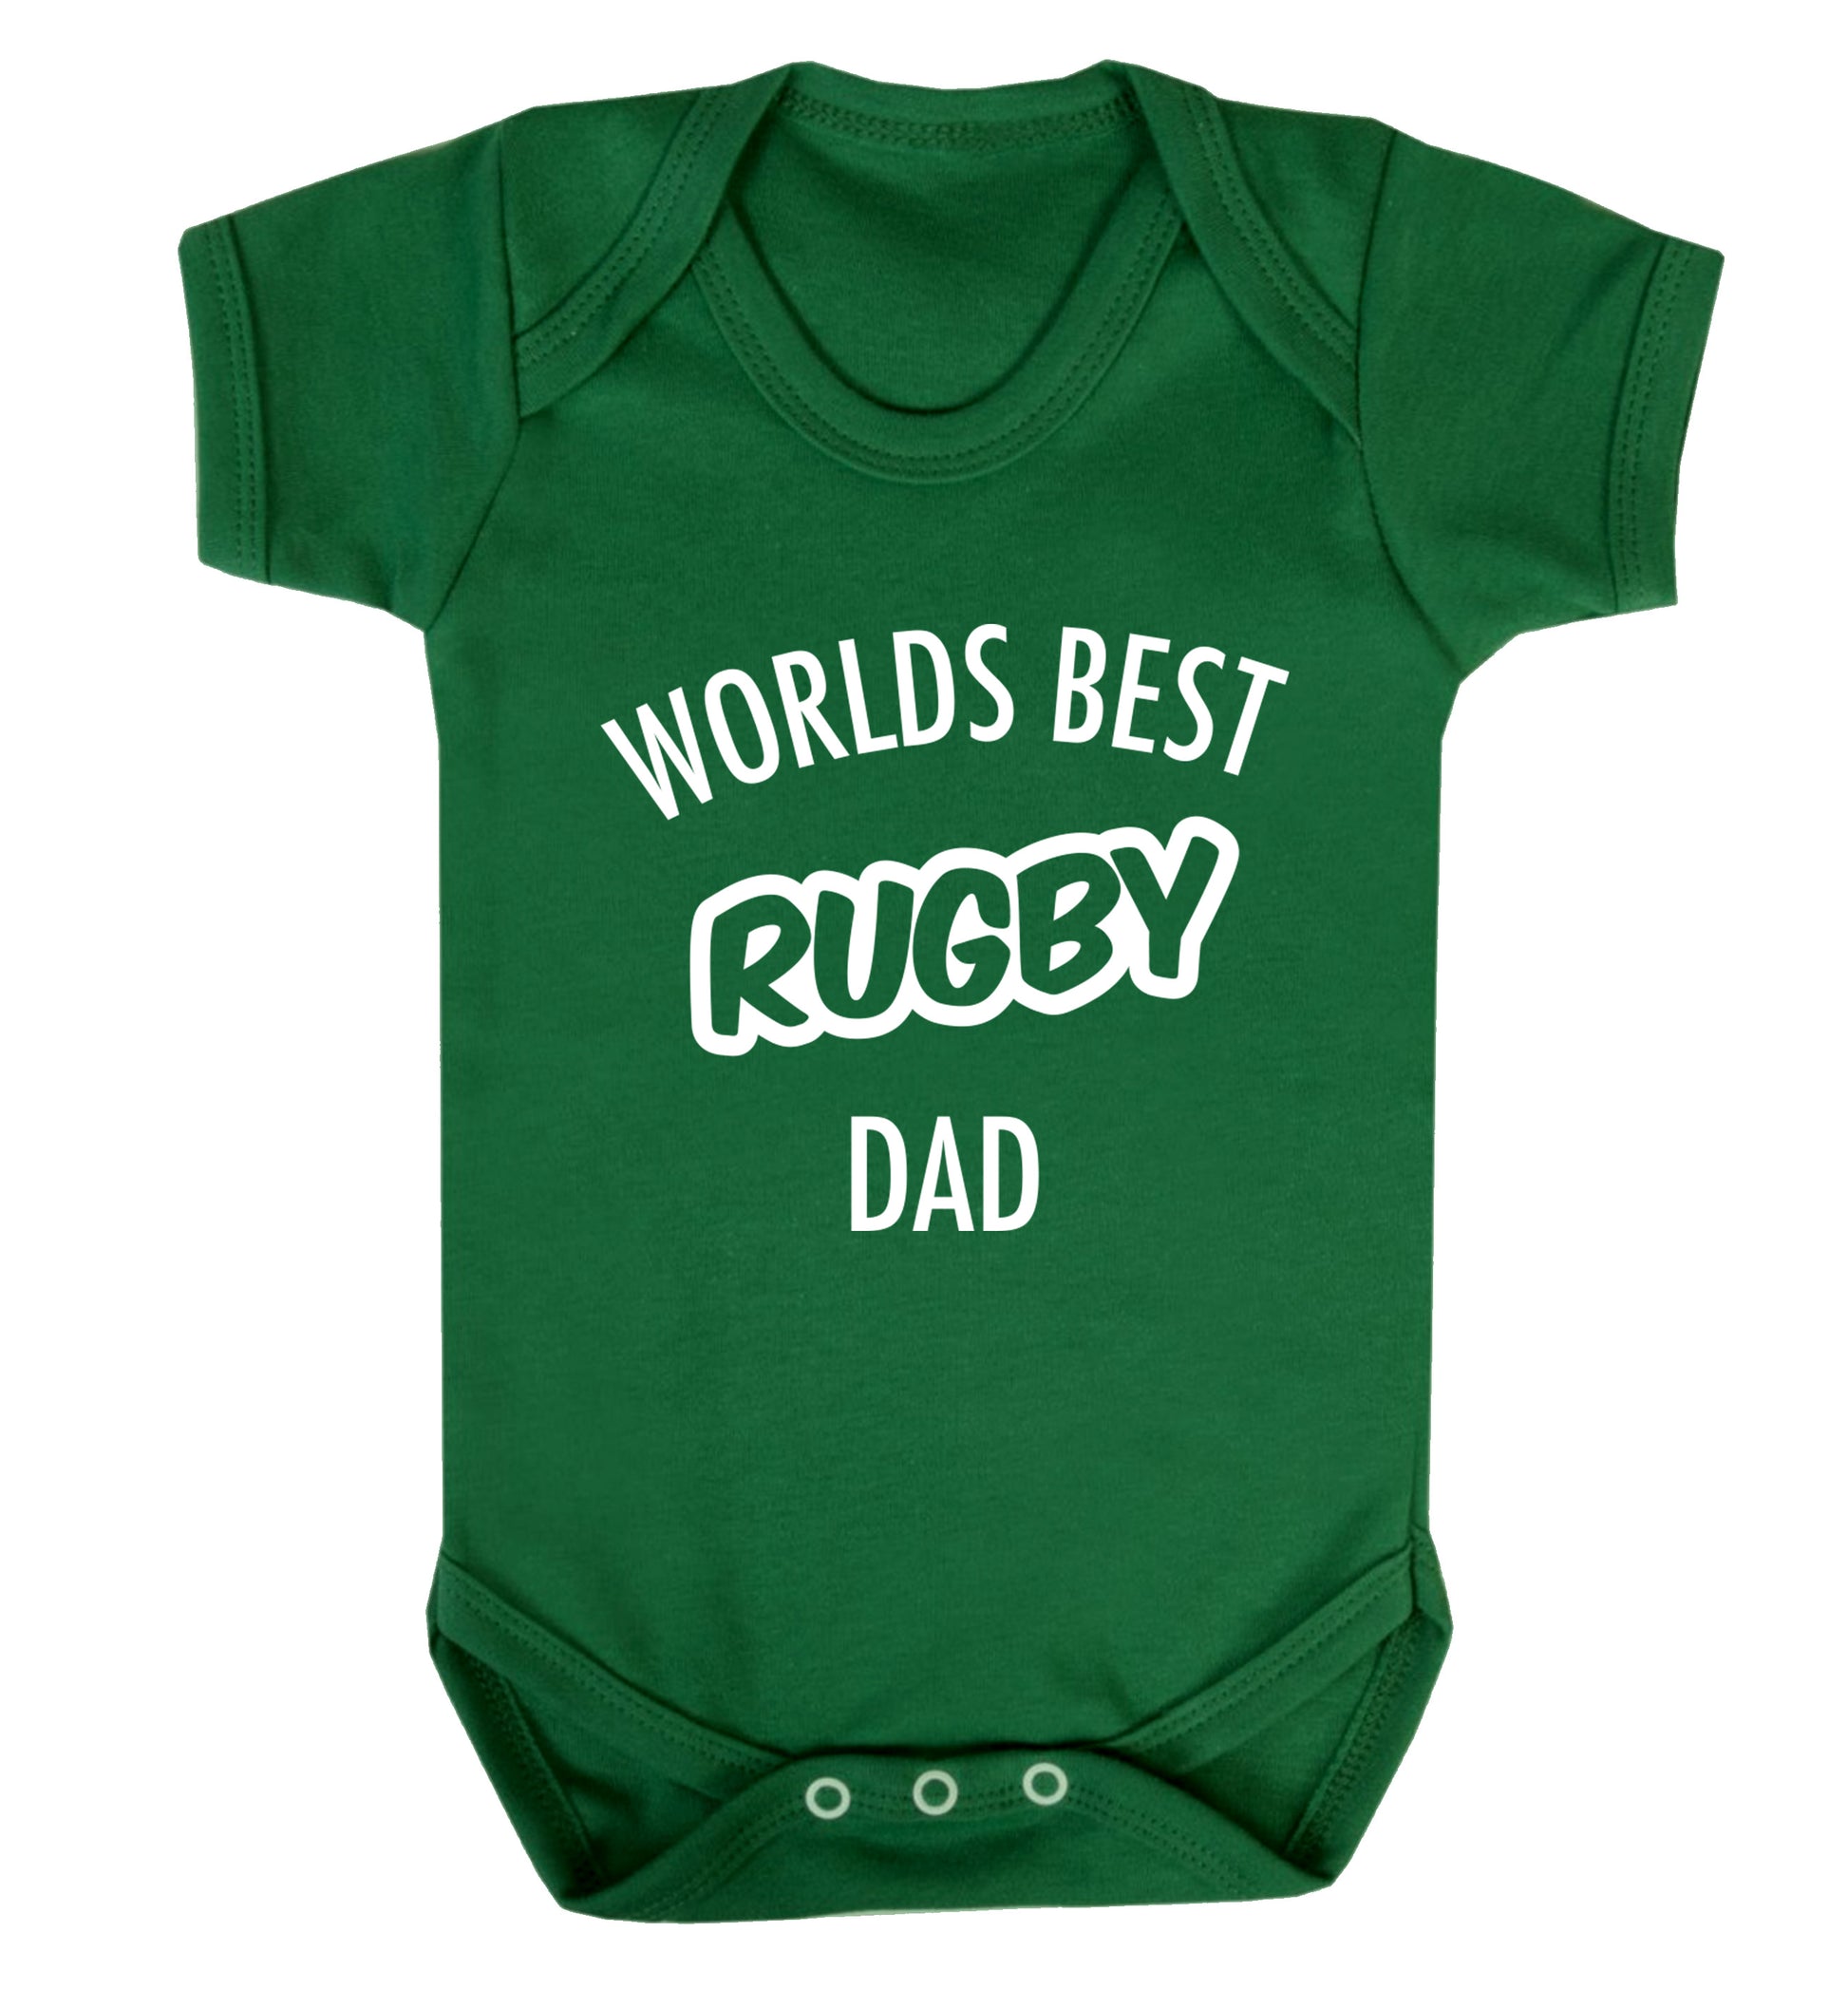 Worlds best rugby dad Baby Vest green 18-24 months